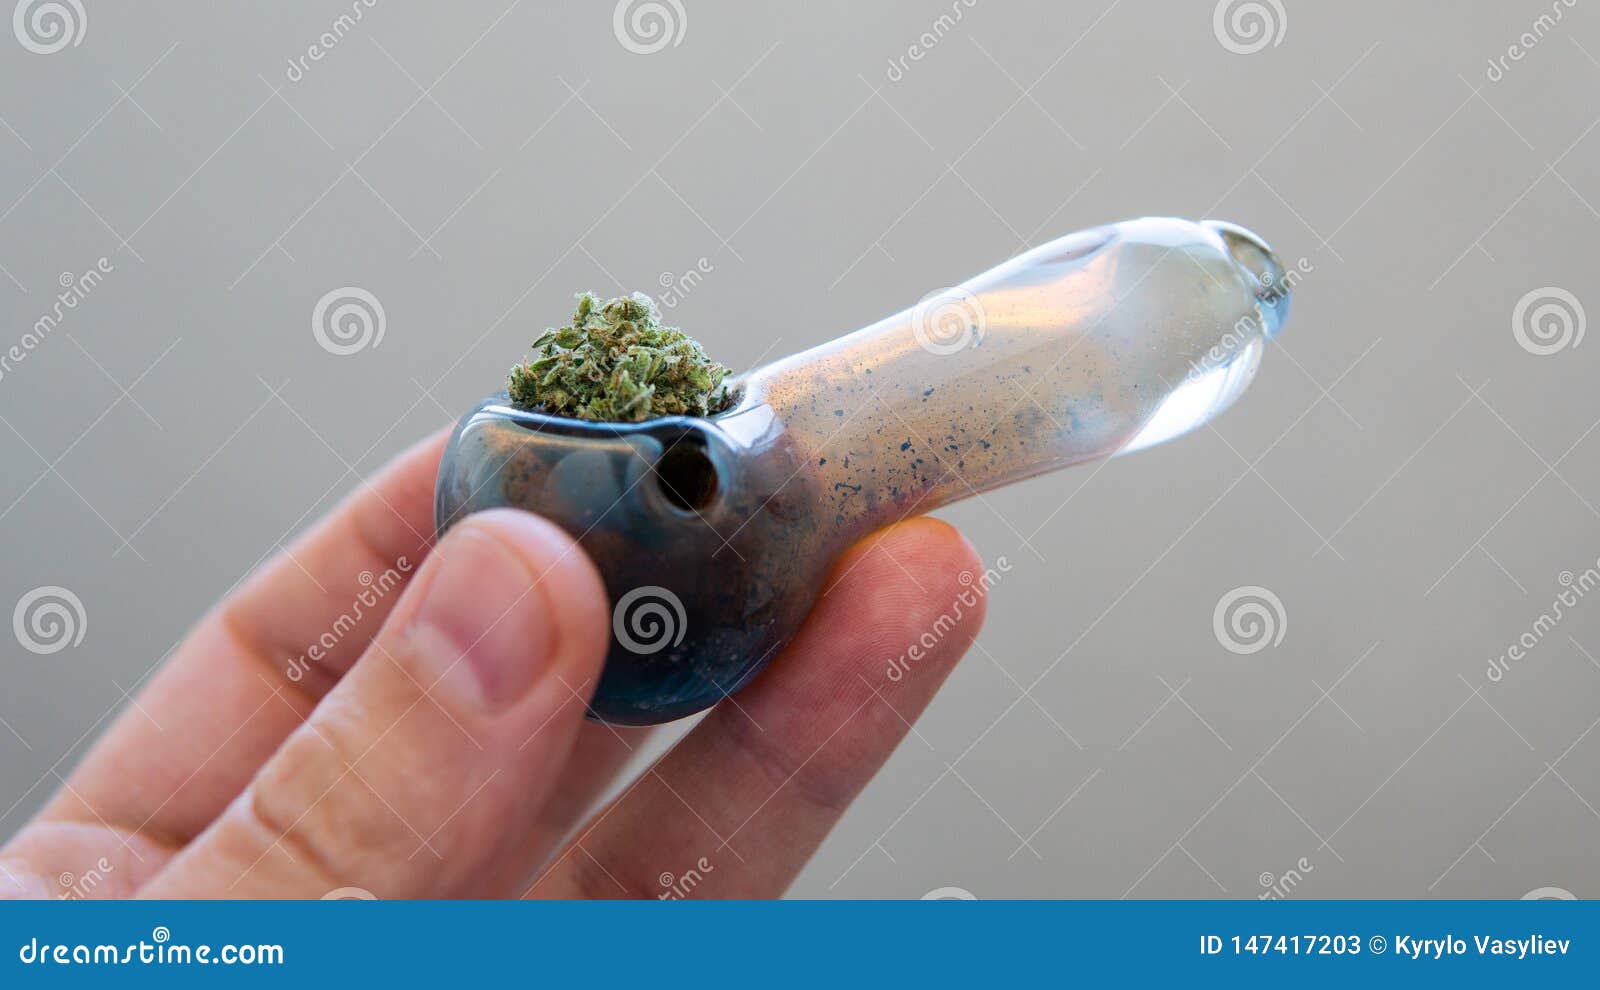 марихуана фото в трубке